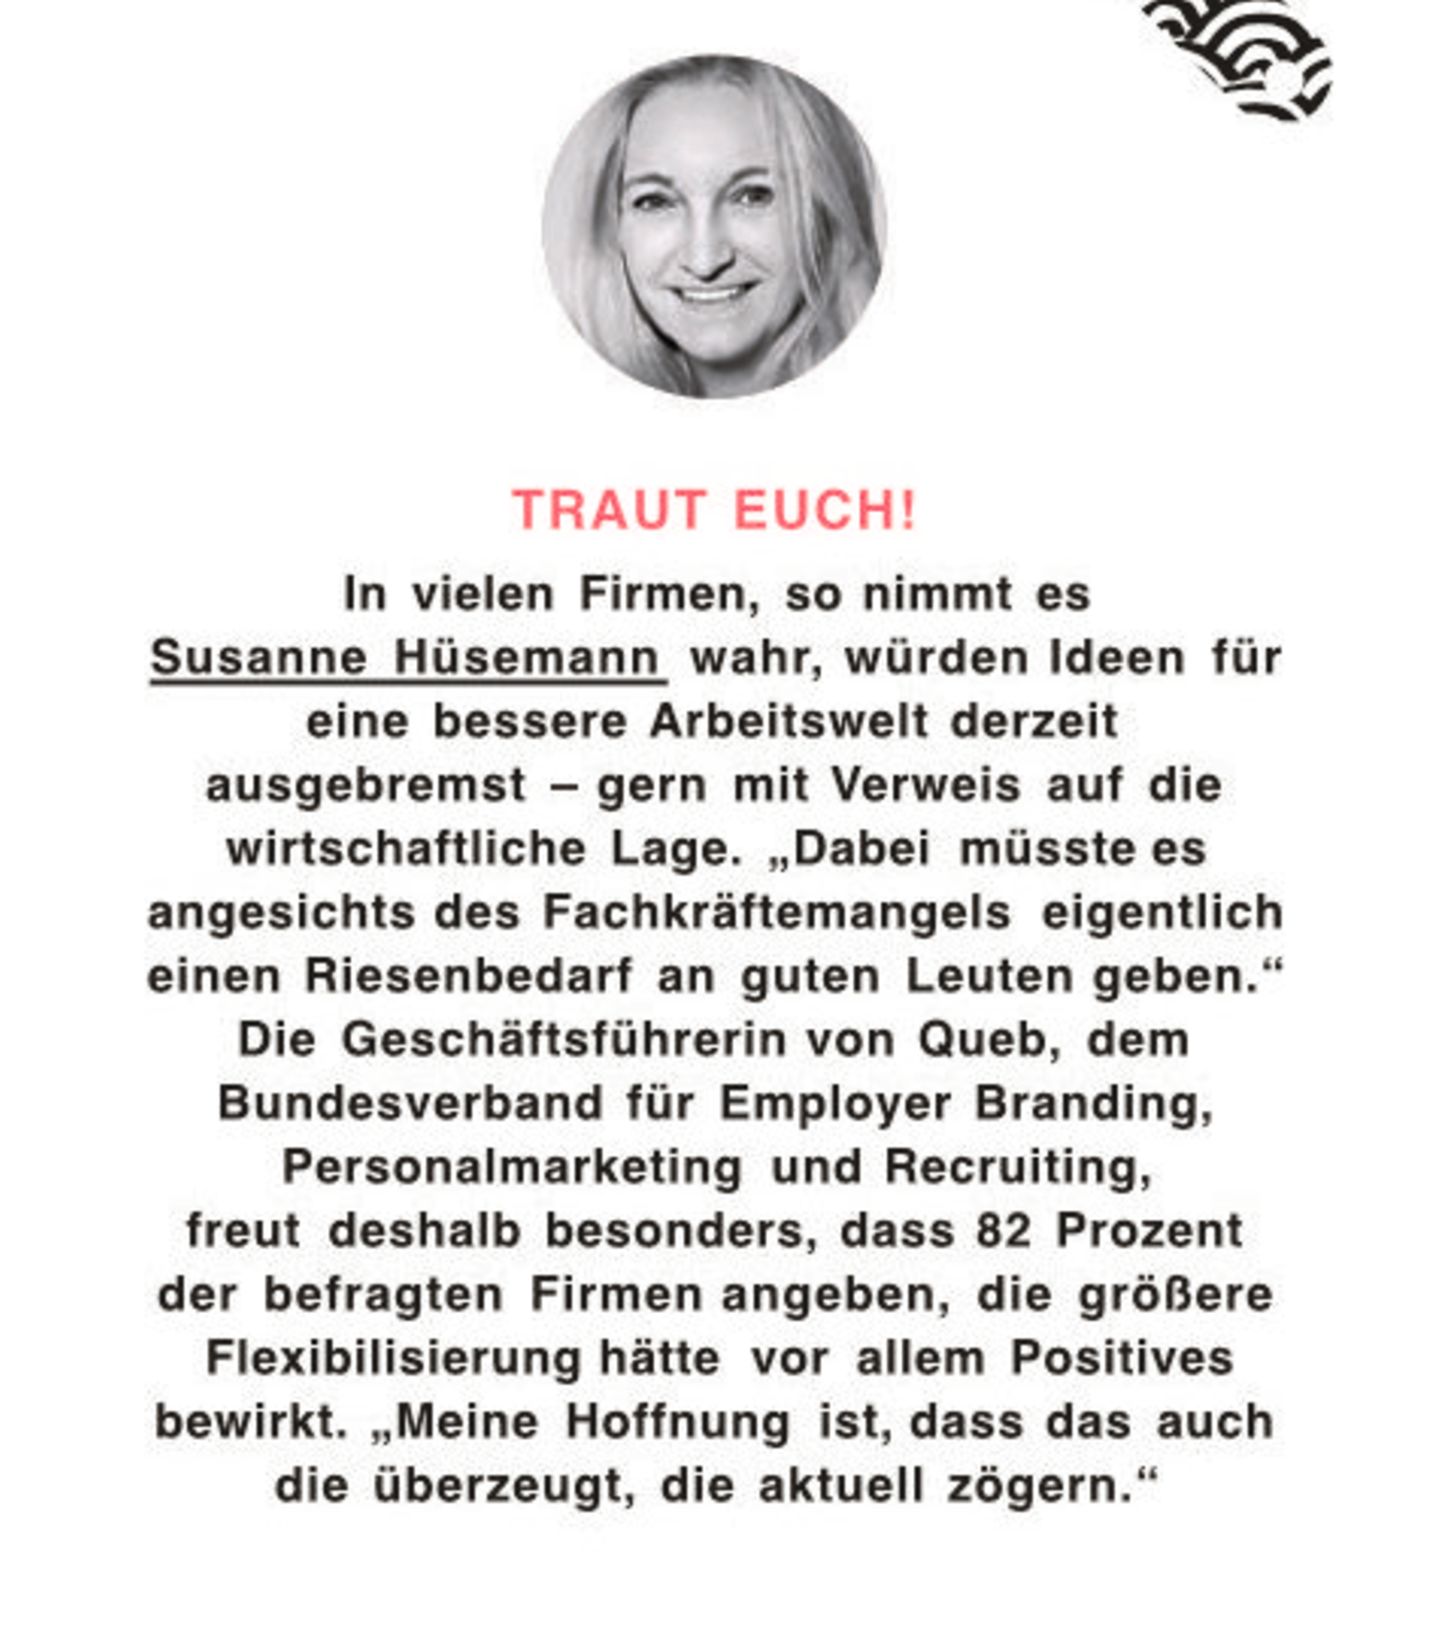 Susanne Hüsemann